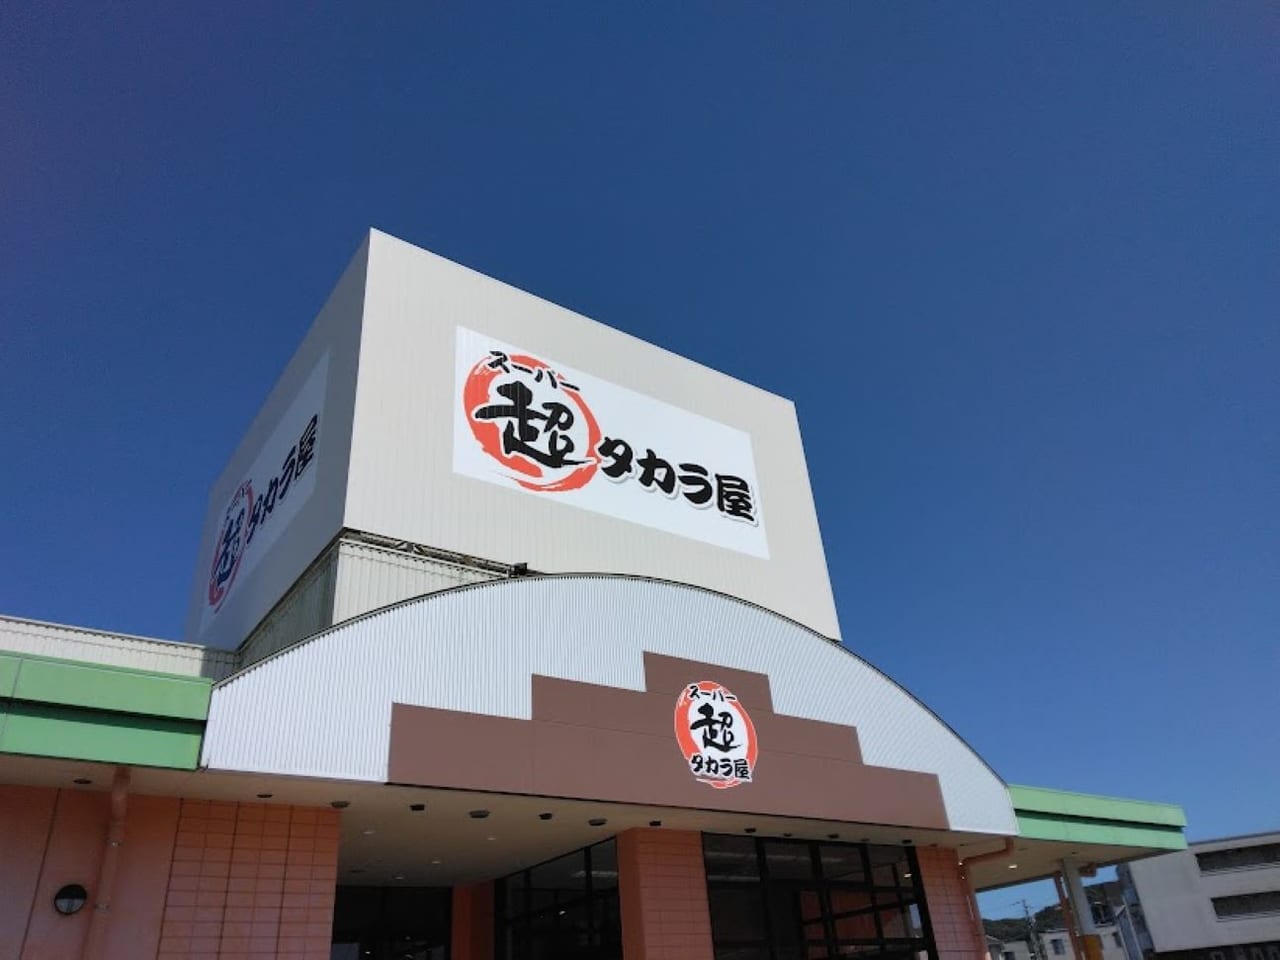 超タカラ屋袋井市愛野スーパー開店愛野駅フードマーケットマム